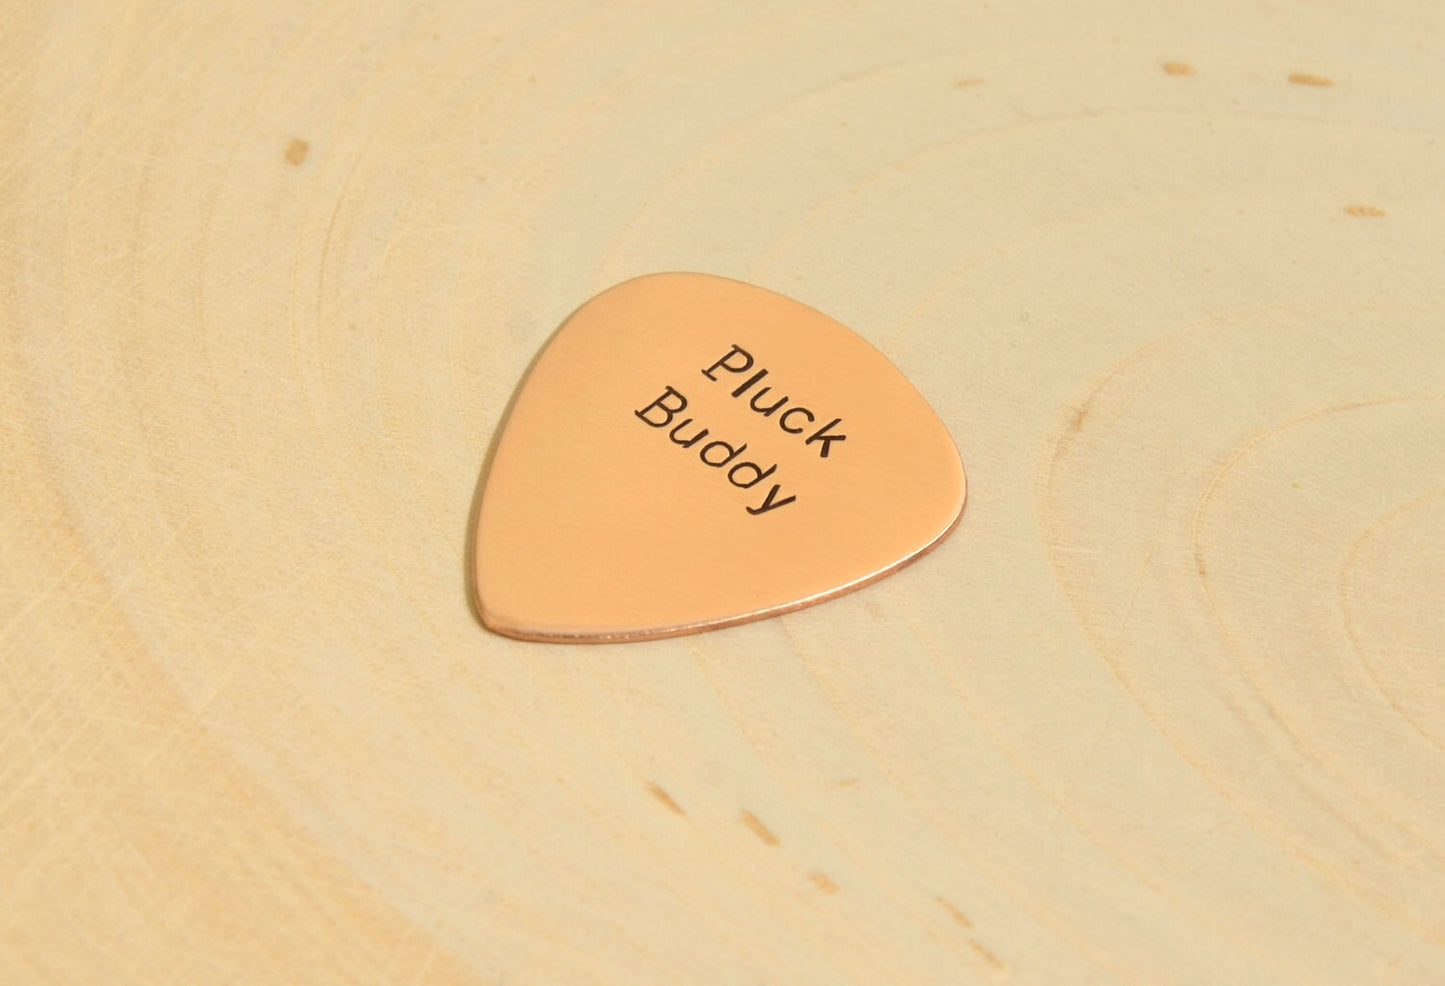 Pluck Buddy Guitar Pick in Copper